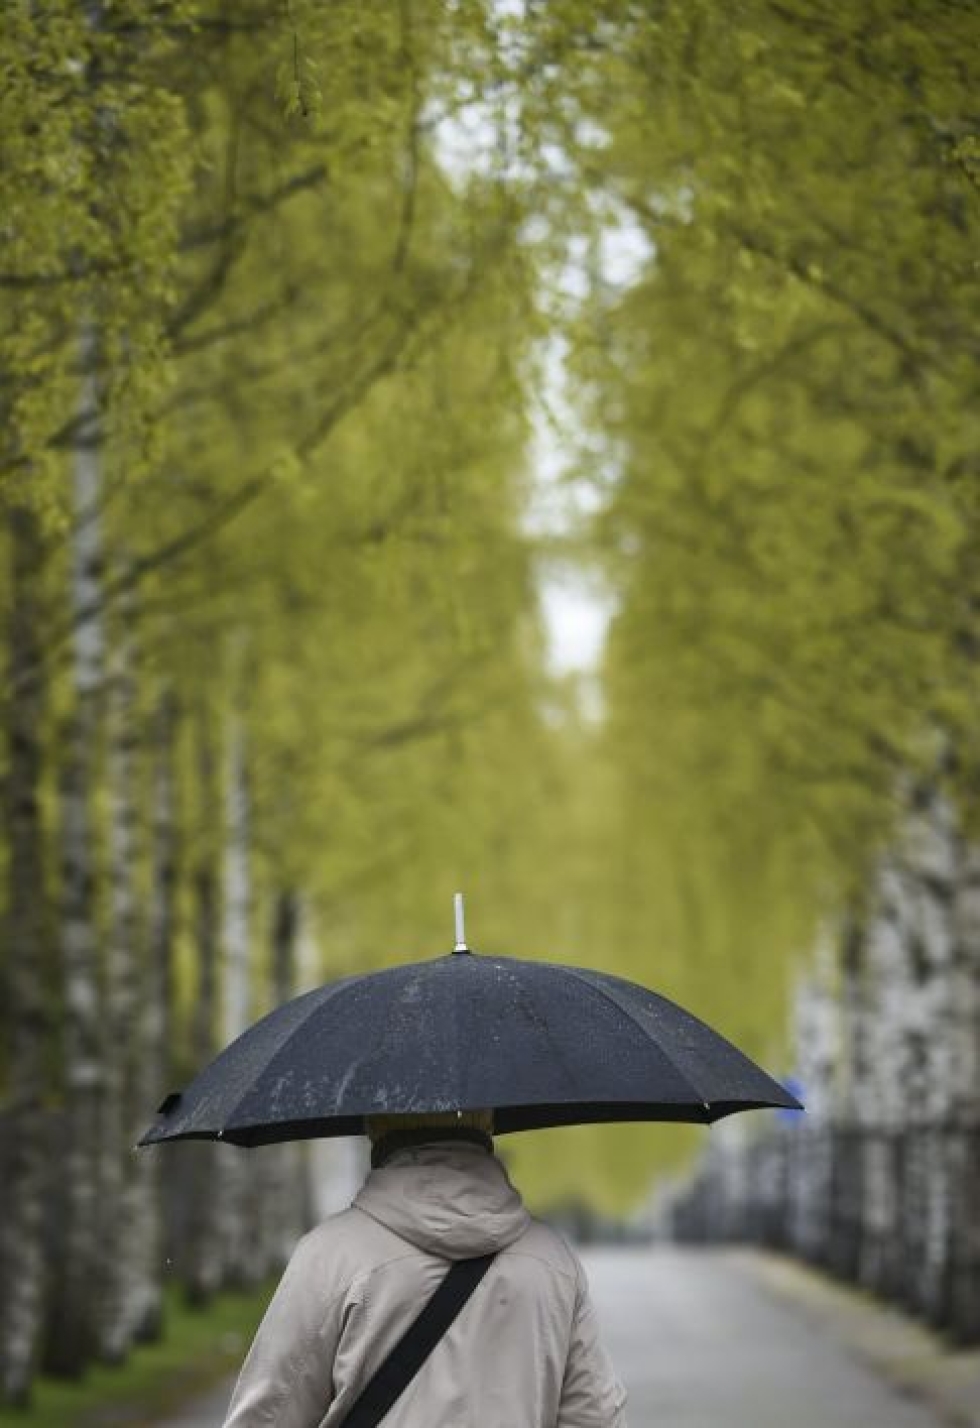 Eteläiseen ja pohjoiseen Suomeen ennustetaan yöpakkasia ja kuuroittaisia sateita. LEHTIKUVA / Markku Ulander